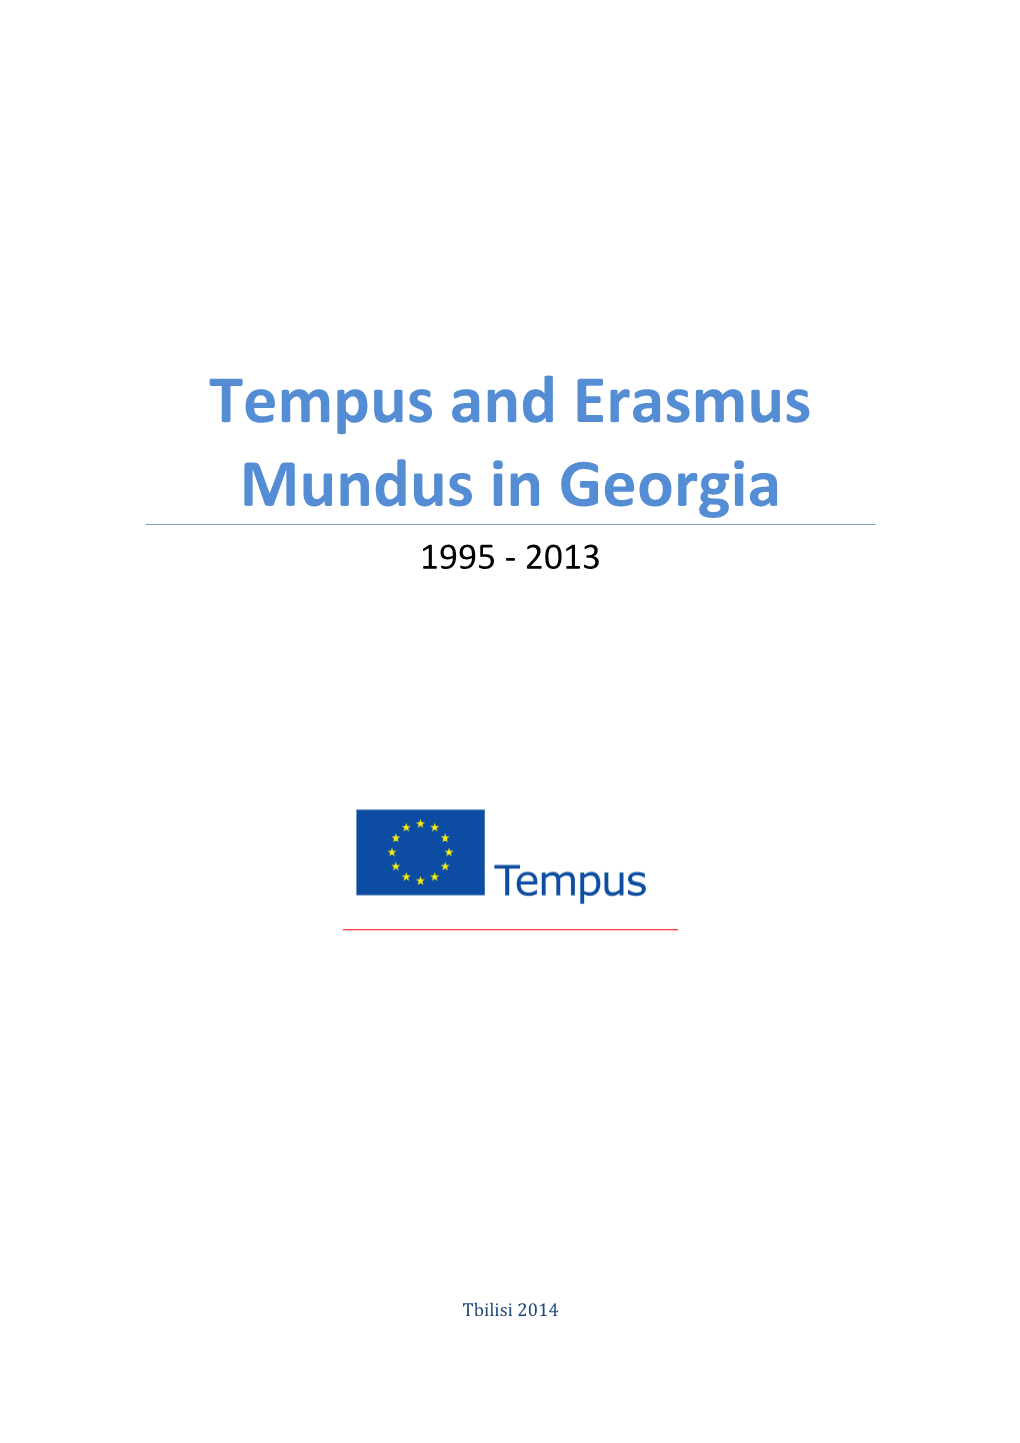 Tempus and Erasmus Mundus in Georgia 1995 - 2013